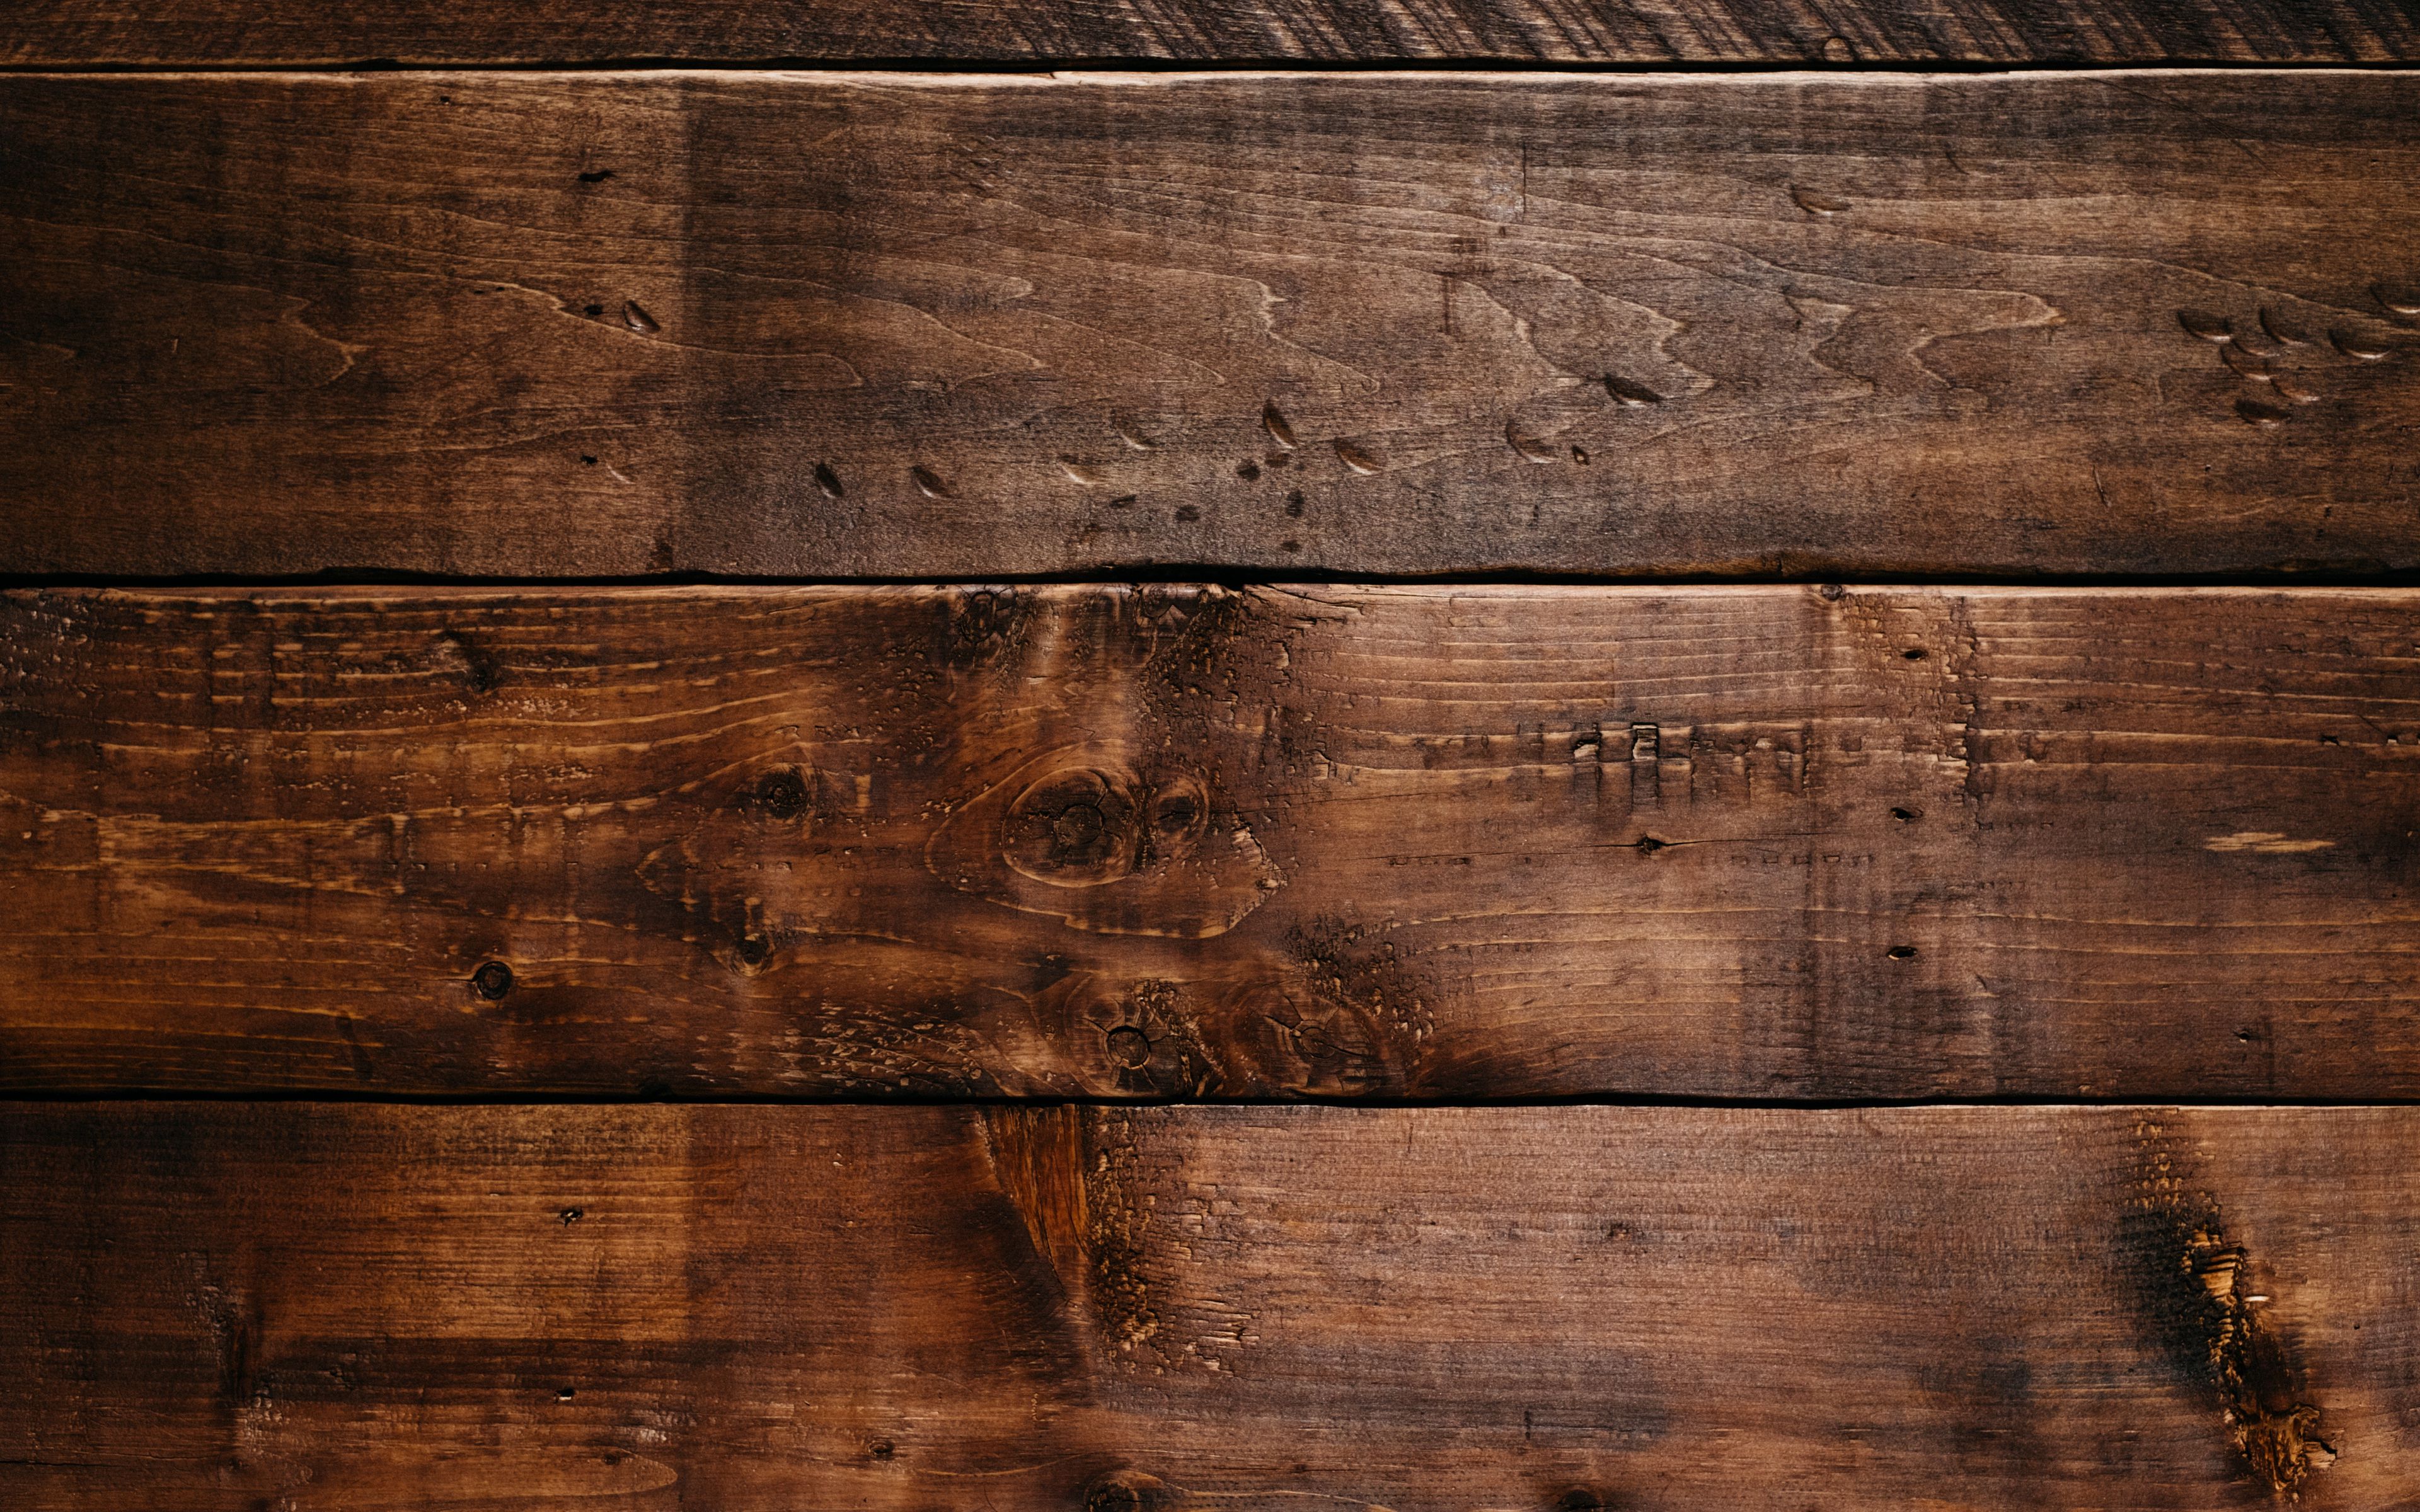 Vẻ đẹp tự nhiên của loại gỗ đã được tái tạo thành các hình nền đẹp mắt với Wood Texture Wallpaper từ PicsArt. Trang trí điện thoại của bạn với những hình ảnh này để tạo ra một cái nhìn hiện đại và sang trọng.